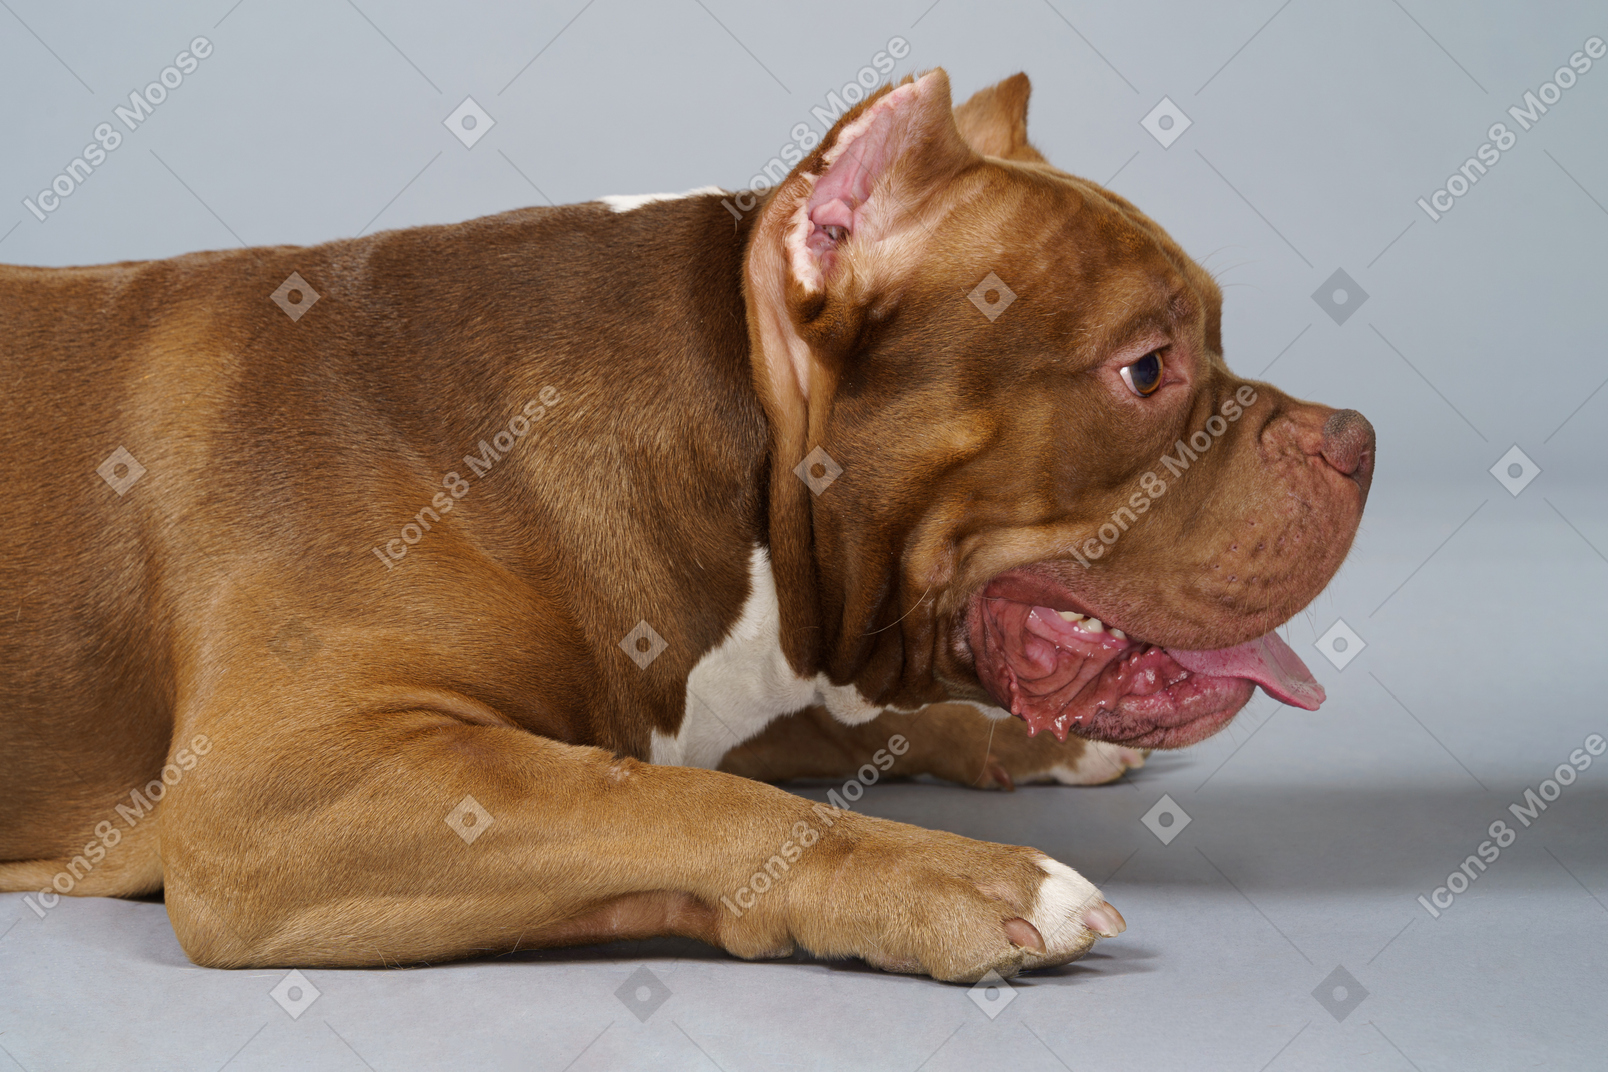 Vista lateral de um bulldog marrom descansando e olhando para o lado